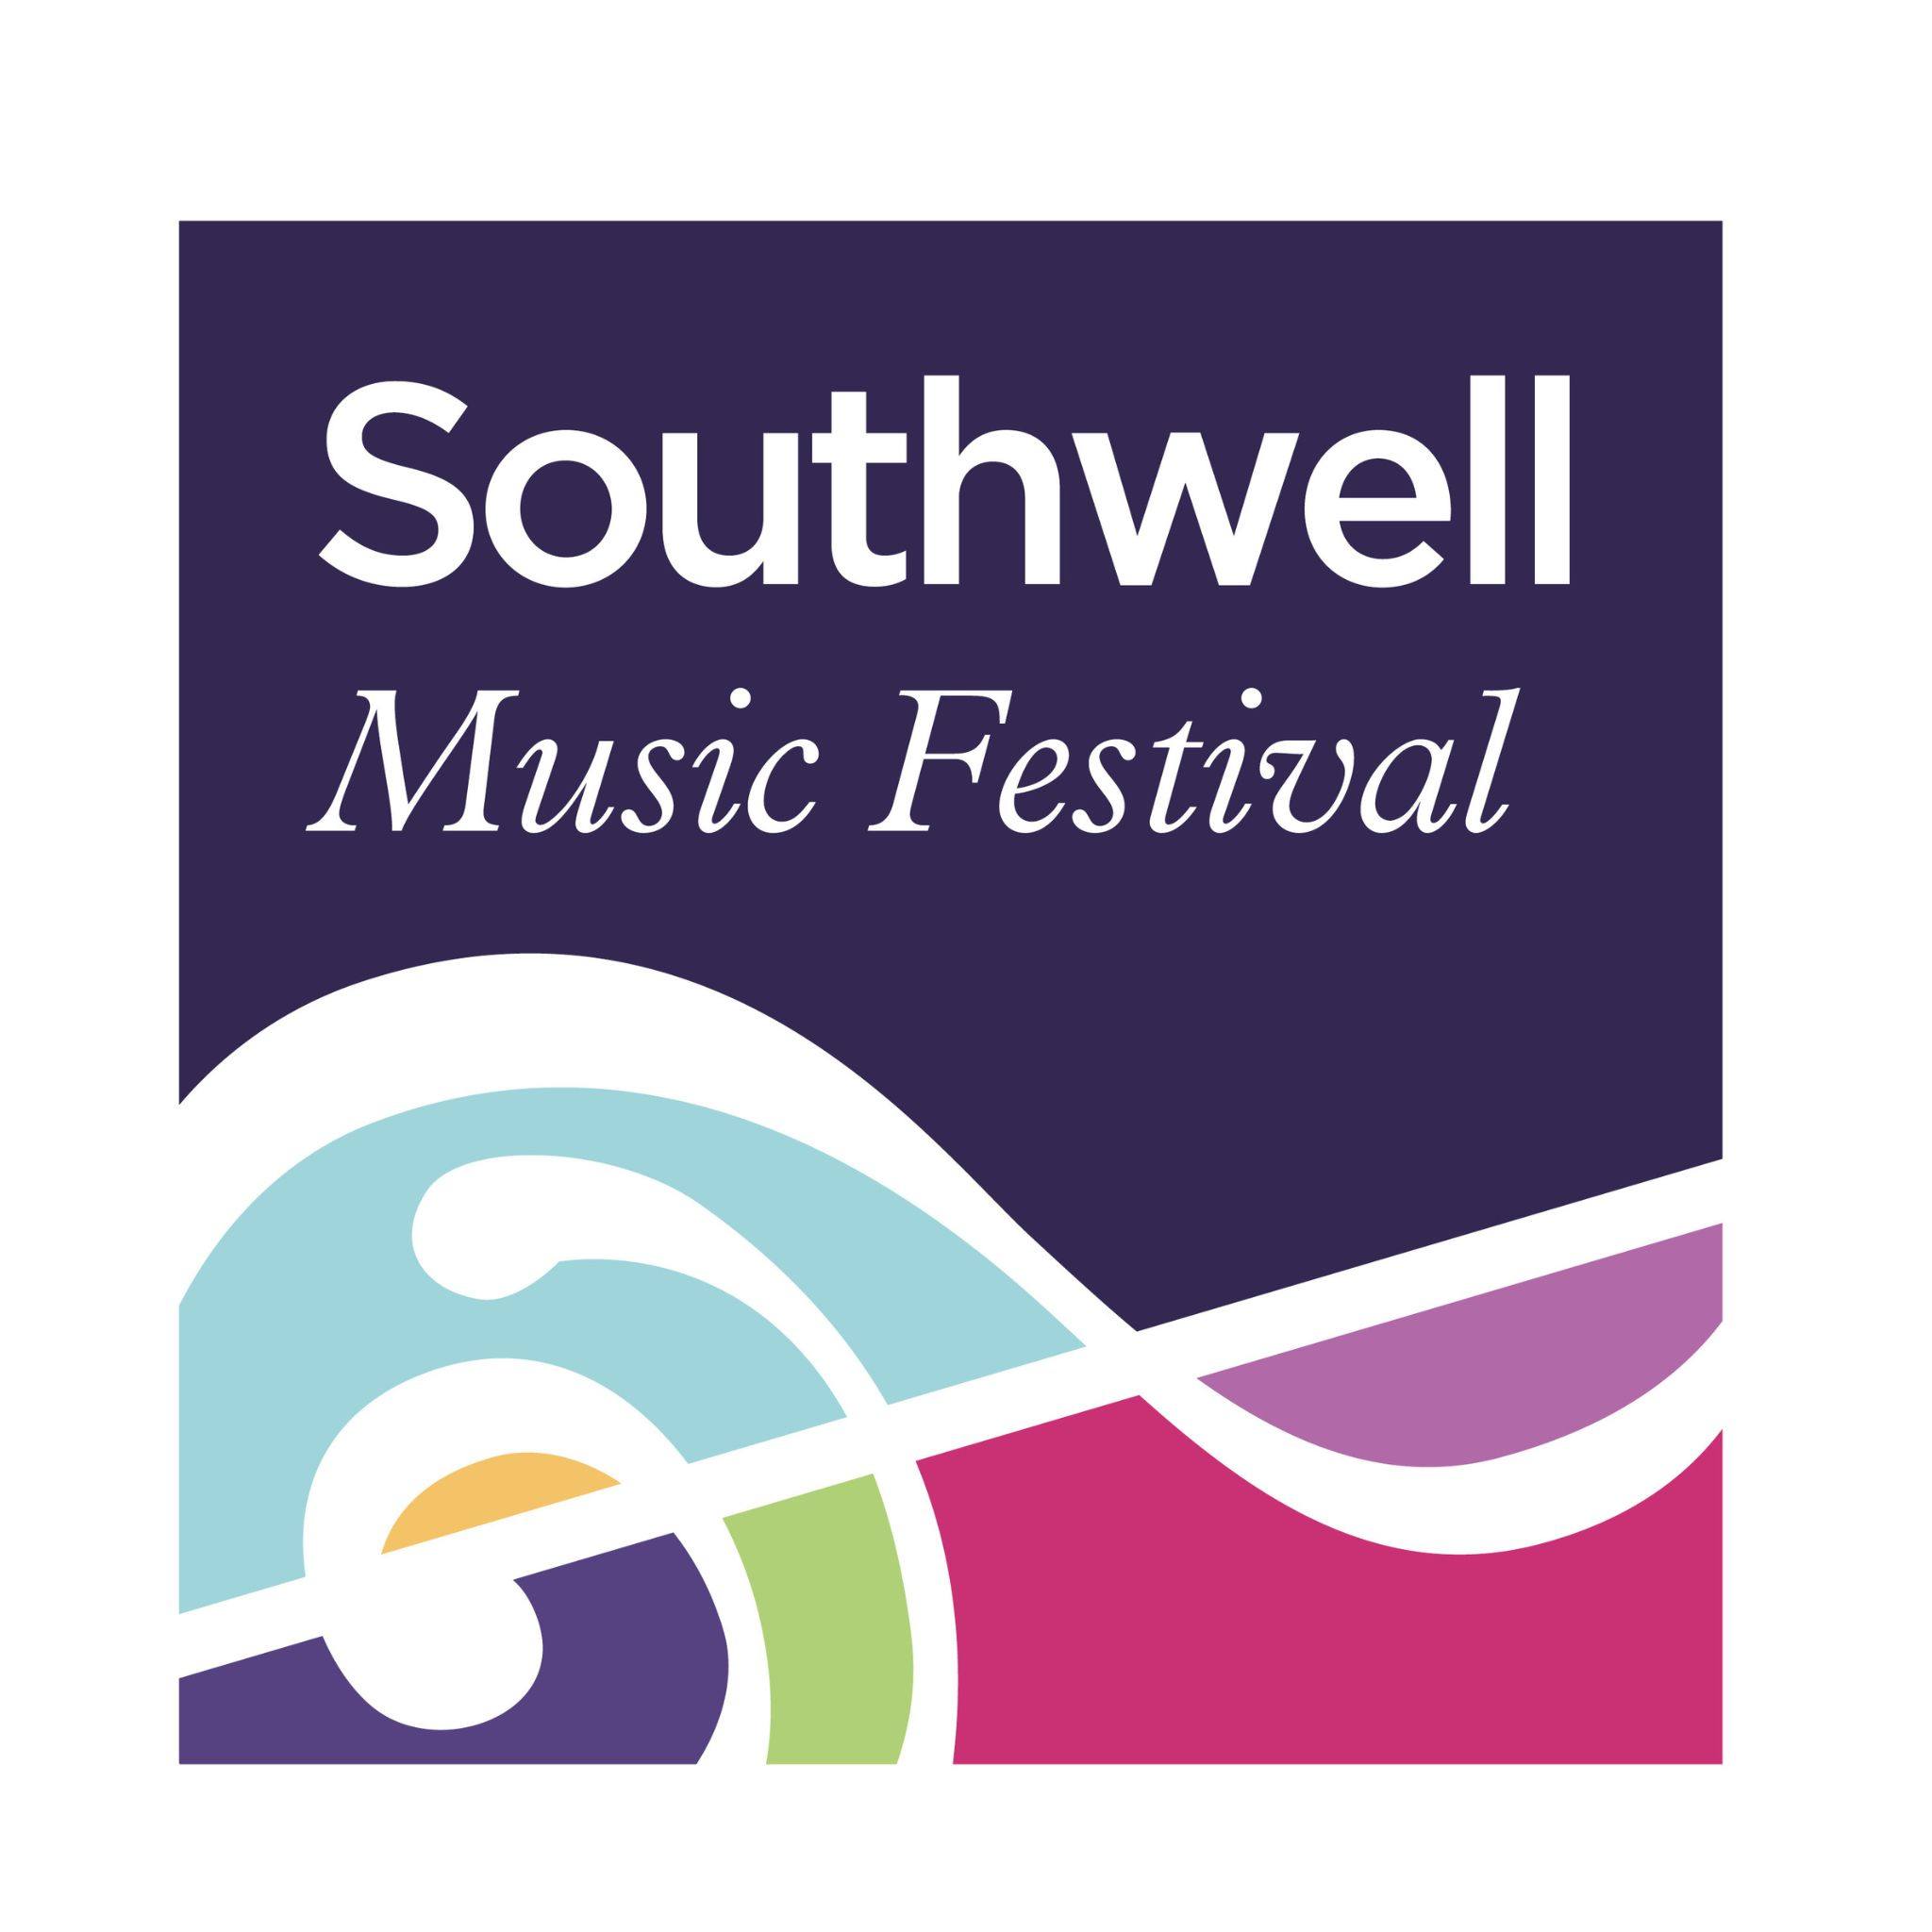 Southwell Music Festival